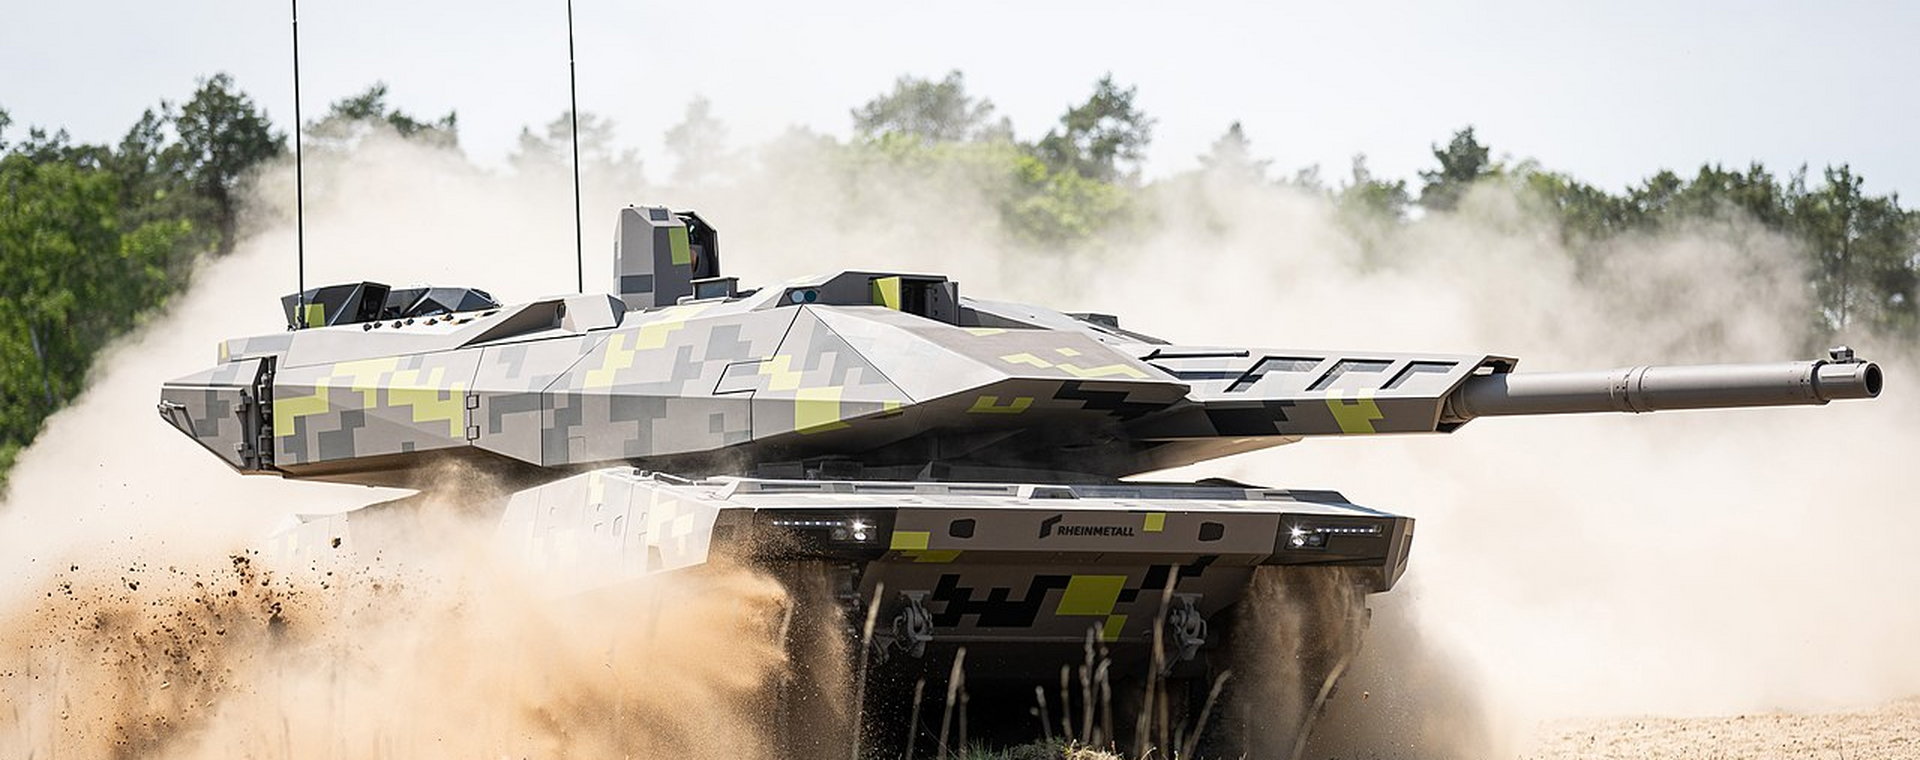 Z czołgu KF51 Panther nie korzysta jeszcze żadna armia świata. Ukraina może być pierwsza.